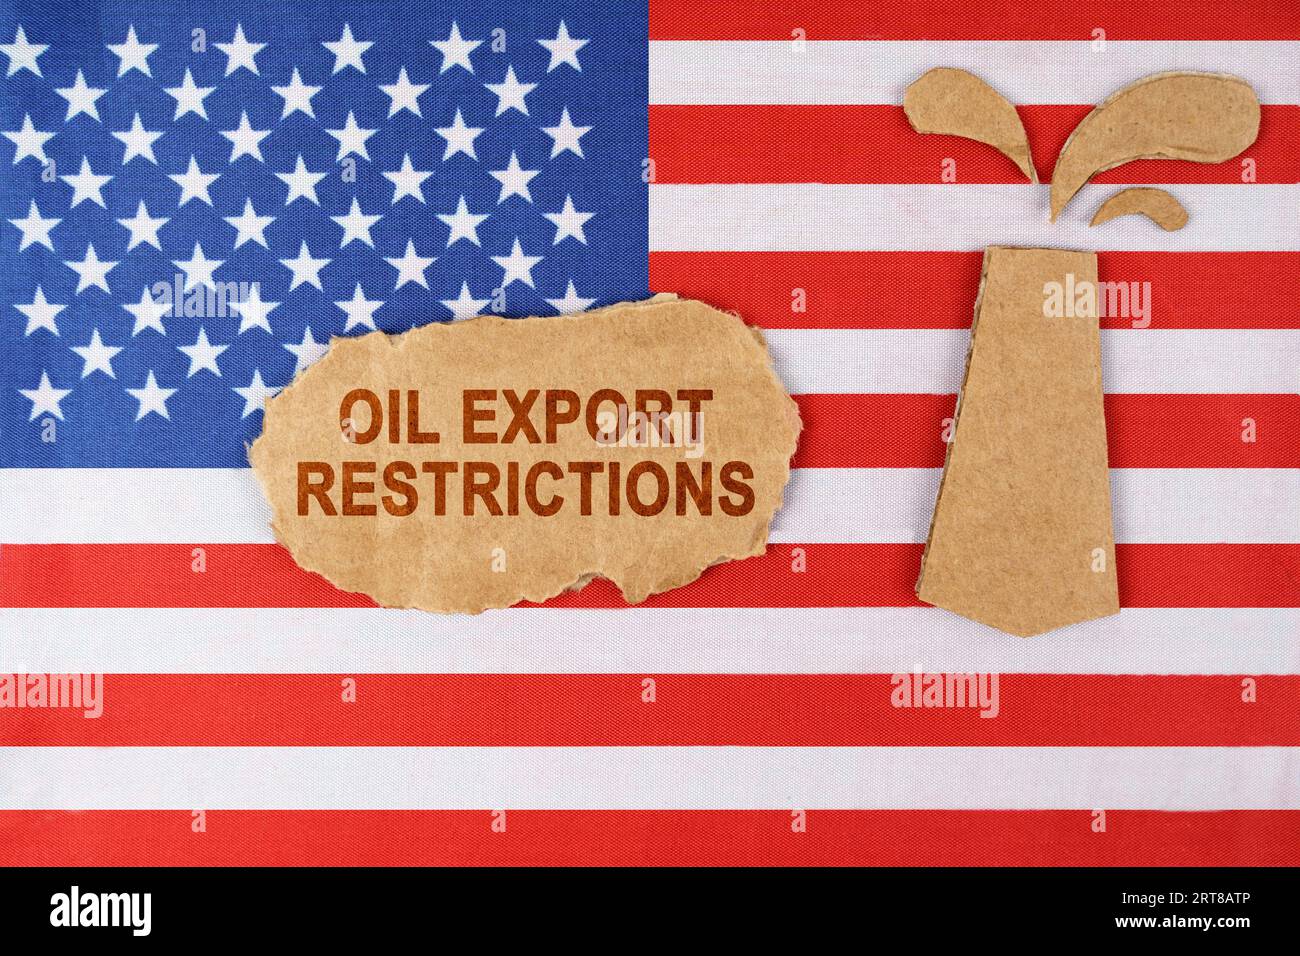 Sulla bandiera degli Stati Uniti c'è una piattaforma petrolifera tagliata fuori dal cartone e un cartello con la scritta "restrizioni all'esportazione di petrolio". Foto Stock